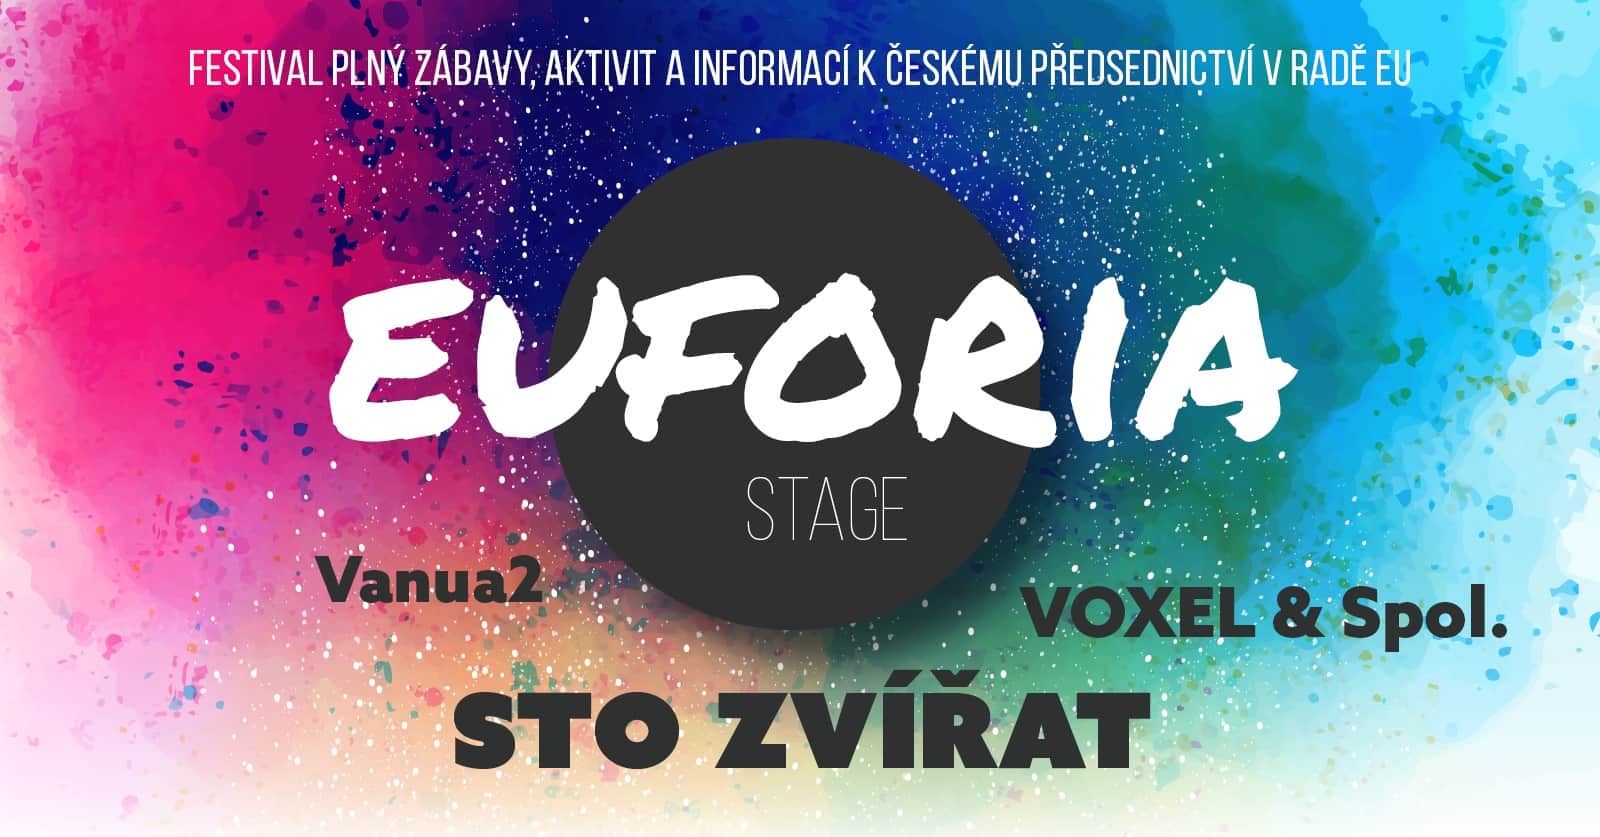 Přečtete si více ze článku EUFORIA STAGE: Festival plný zábavy, aktivit a informací k českému předsednictví v Radě EU